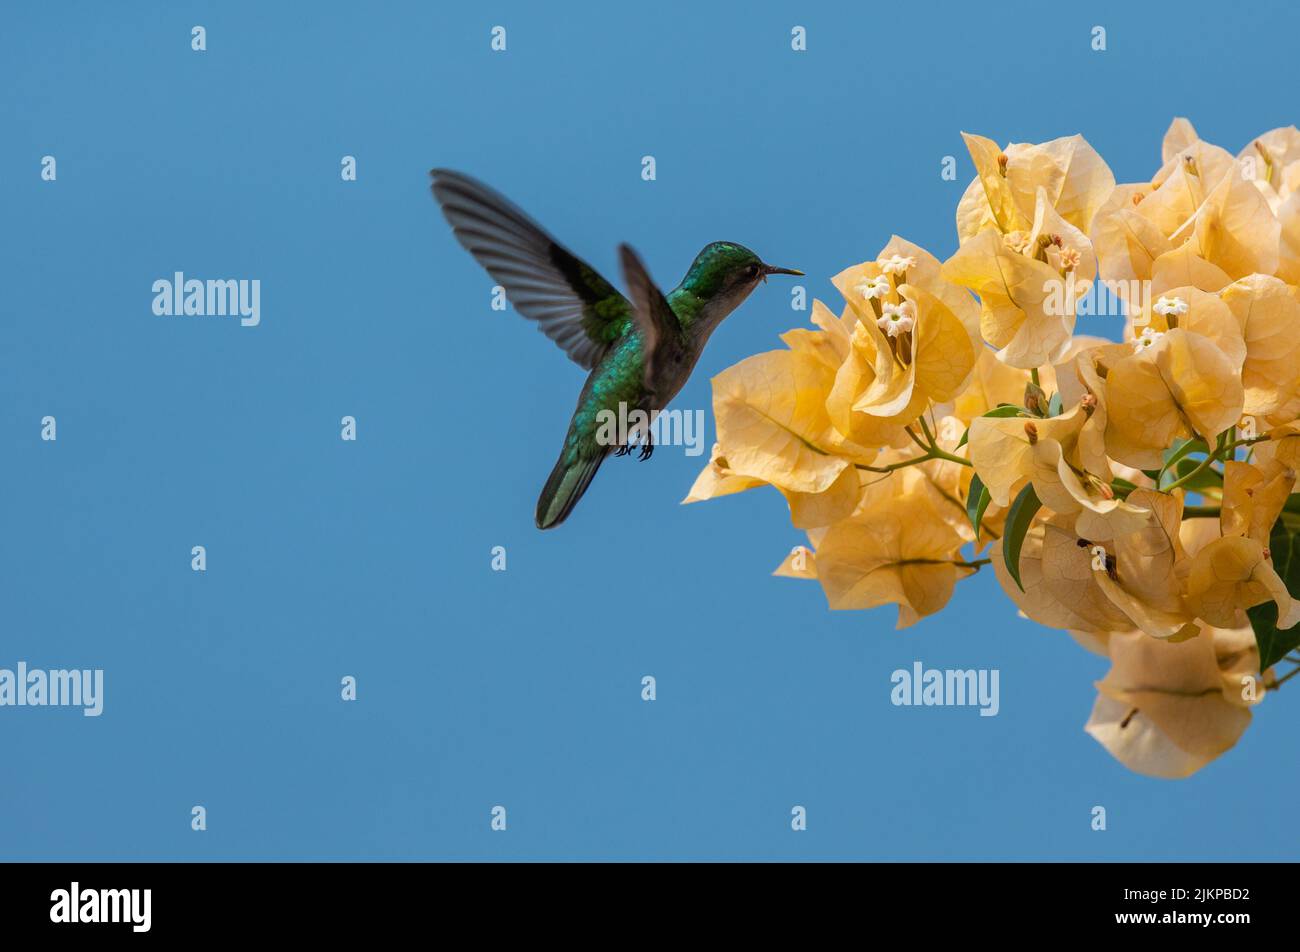 Gros plan d'un colibri volant et approchant des fleurs dans le jardin au printemps Banque D'Images